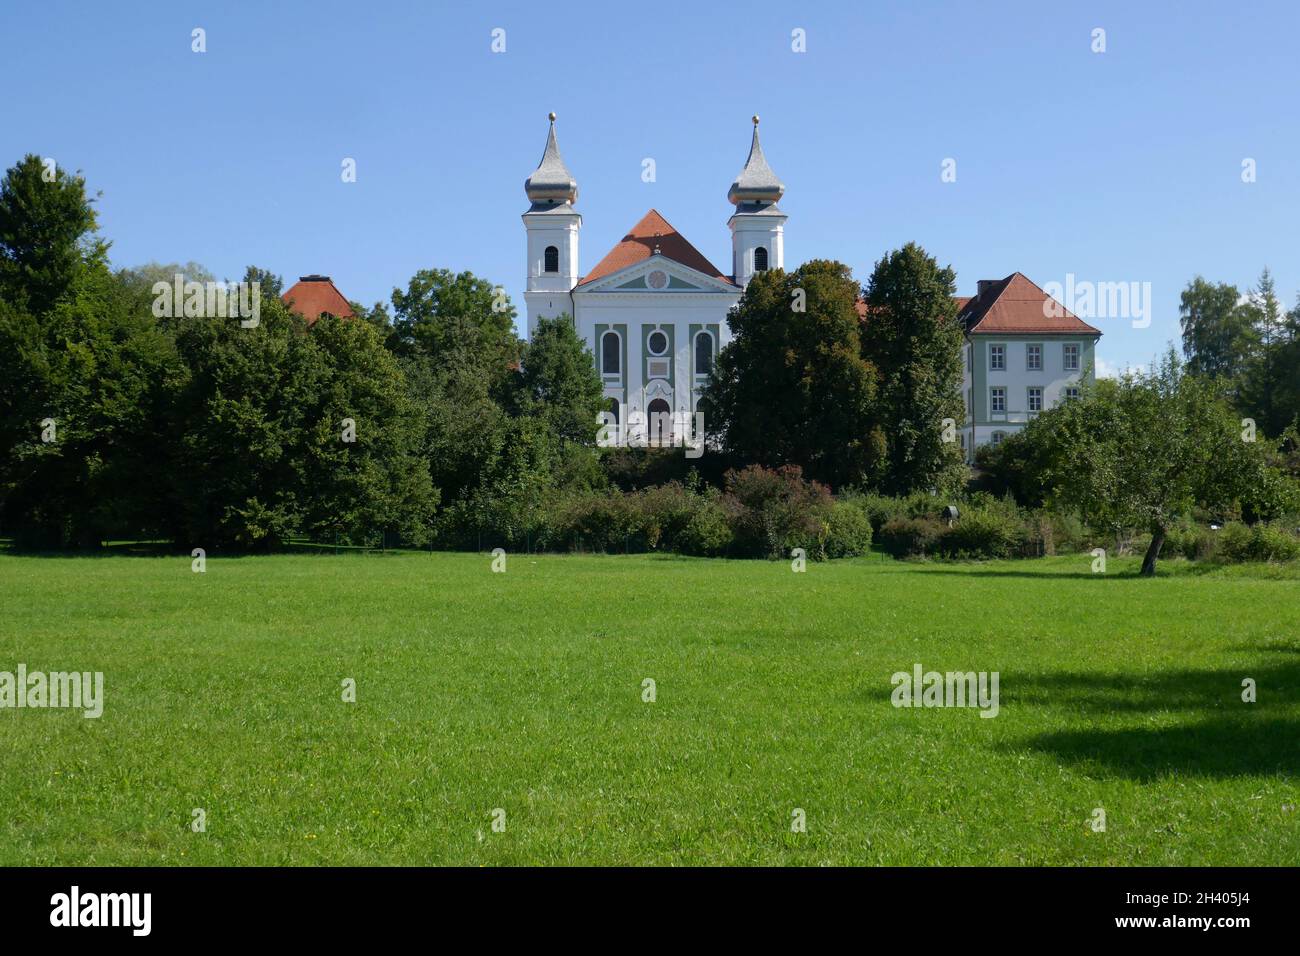 Cohaus monastery Schlehdorf Stock Photo